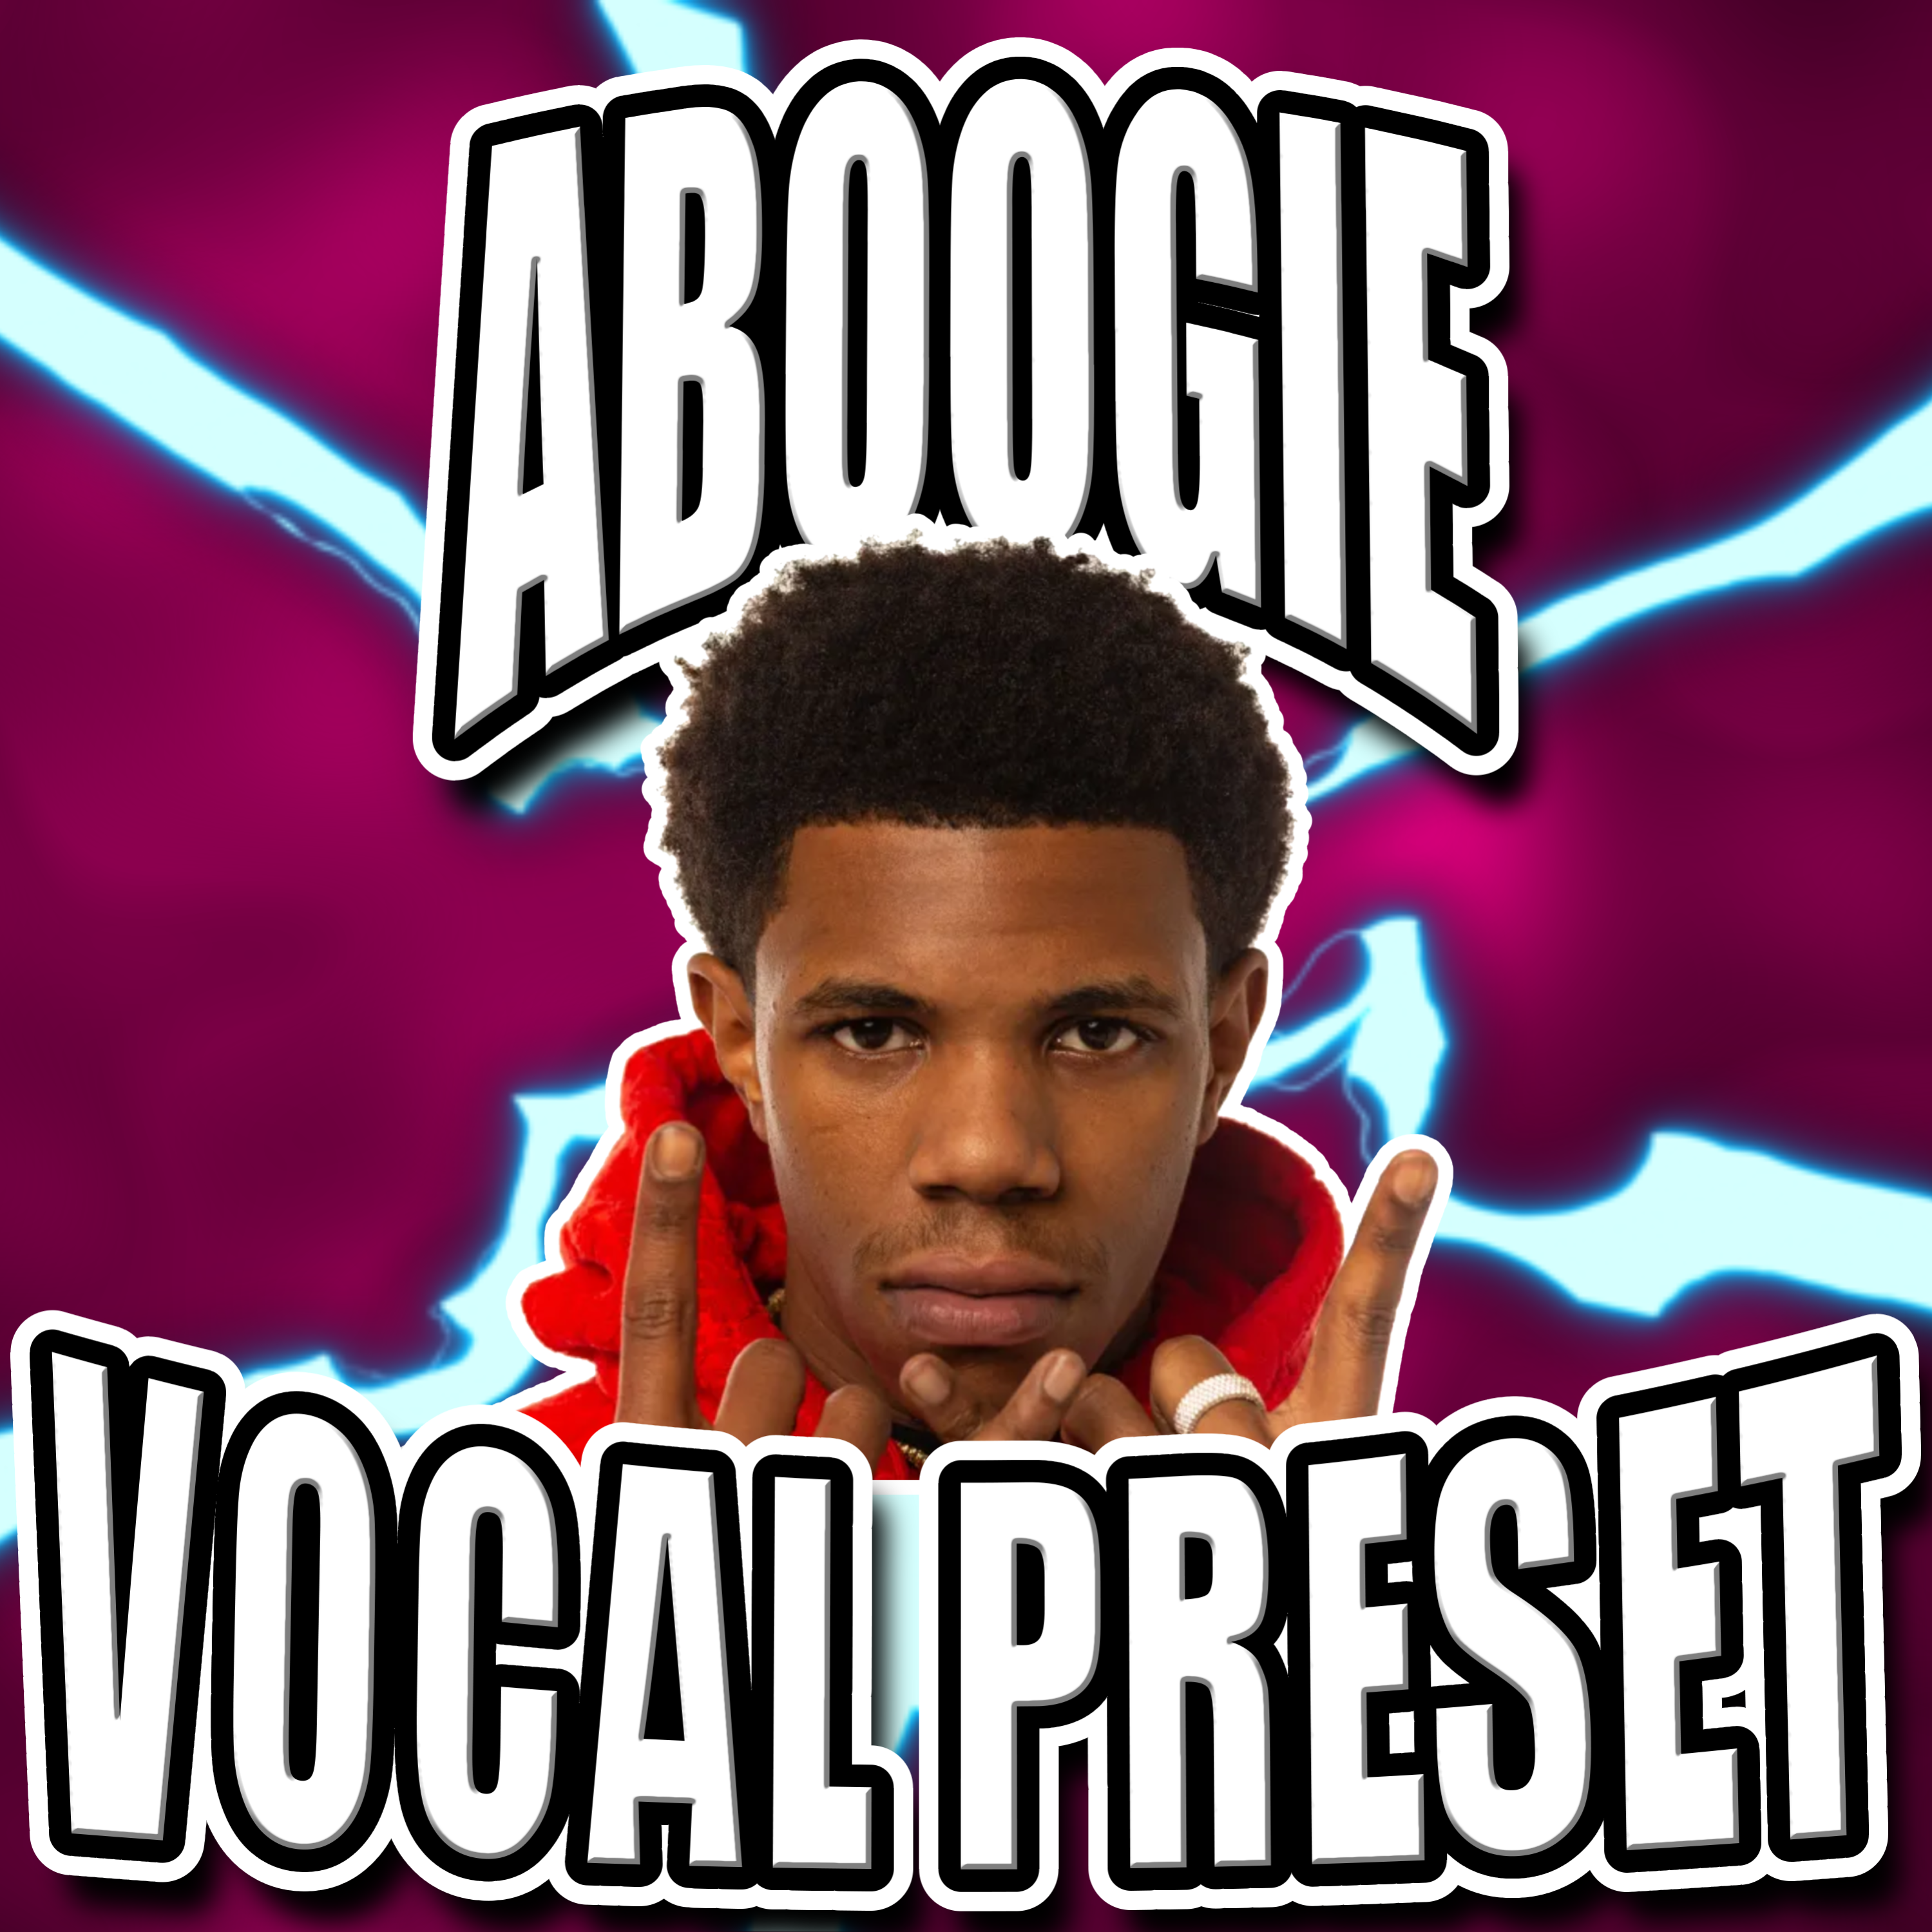 A Boogie Wit Da Hoodie  Vocal Preset